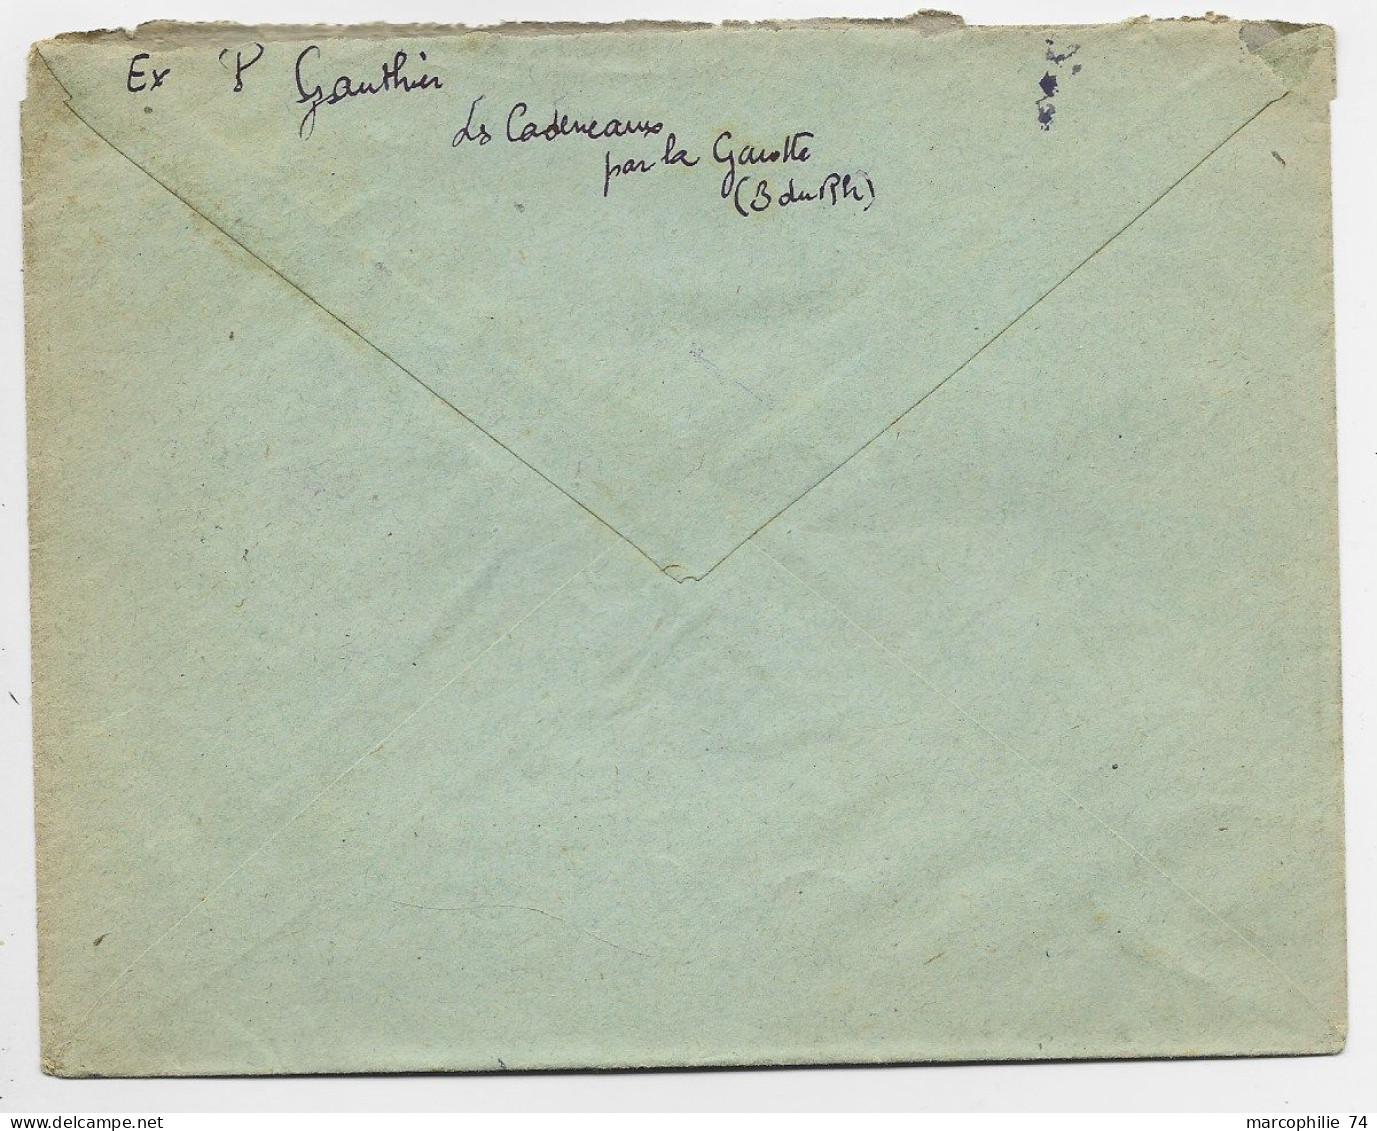 GANDON 5FR VERTX3 719 LETTRE REC PROVISOIRE C.PERLE LA GAVOTTE 5.4.1947 BCHES DU RHONE - 1945-54 Marianna Di Gandon